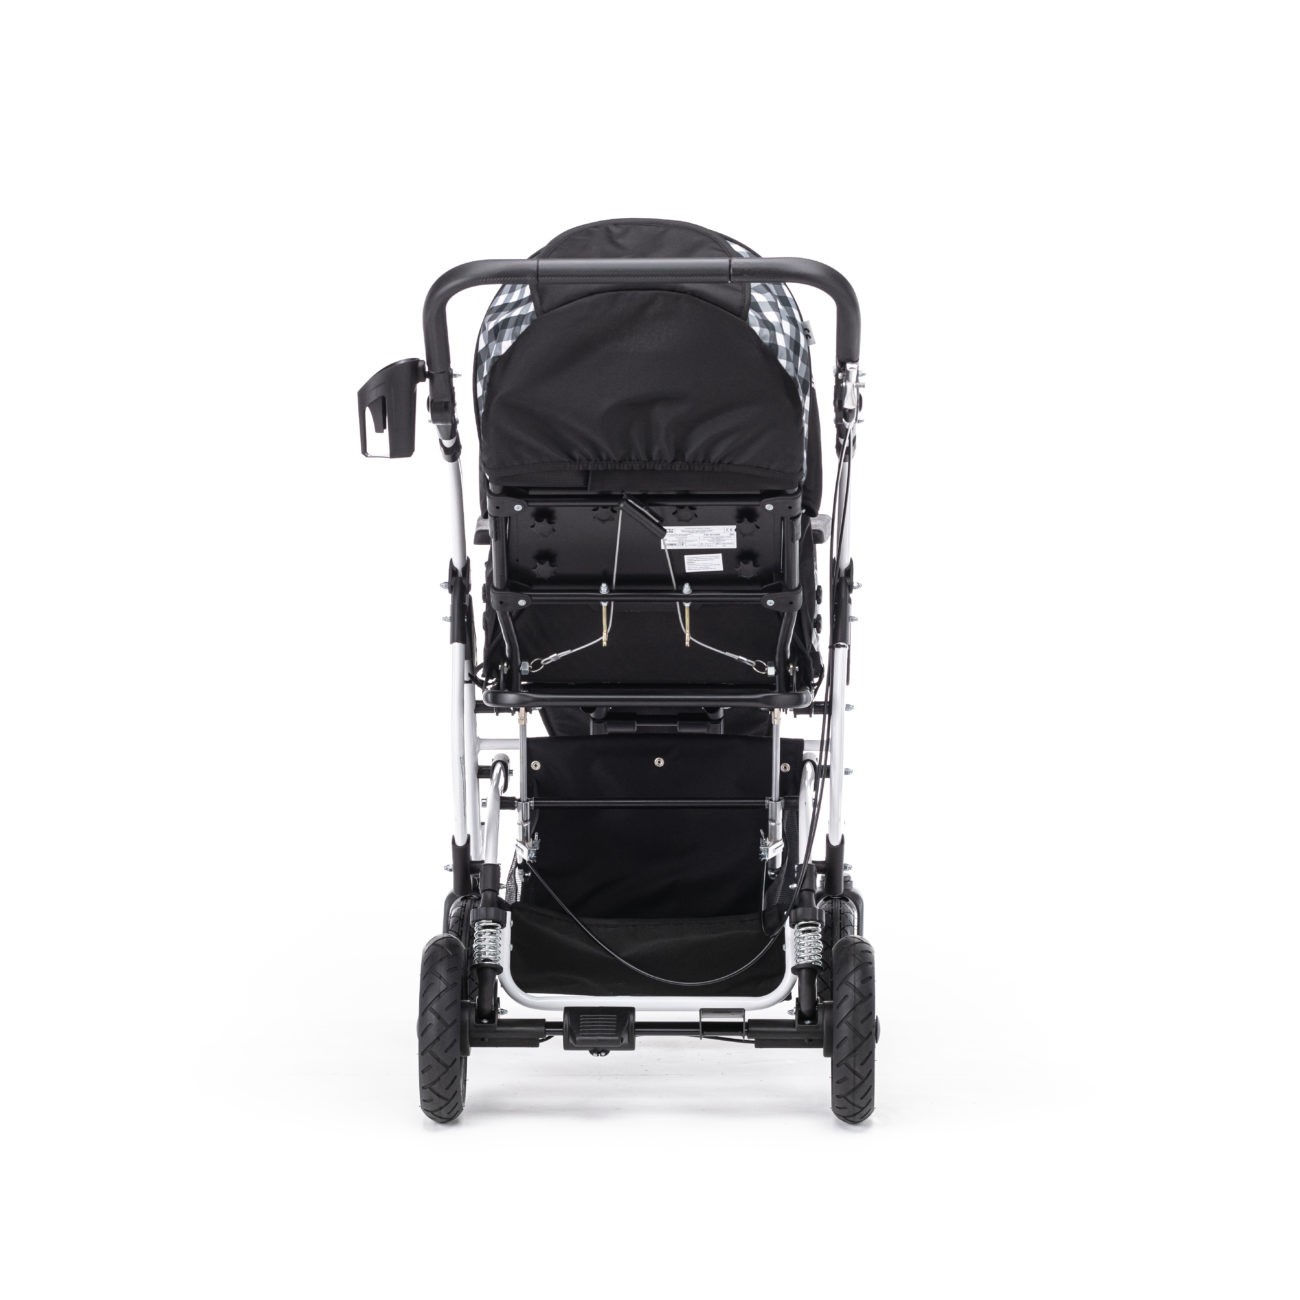 Кресло коляска для детей с дцп vitea care umbrella vcg0c drvg0c размер 3